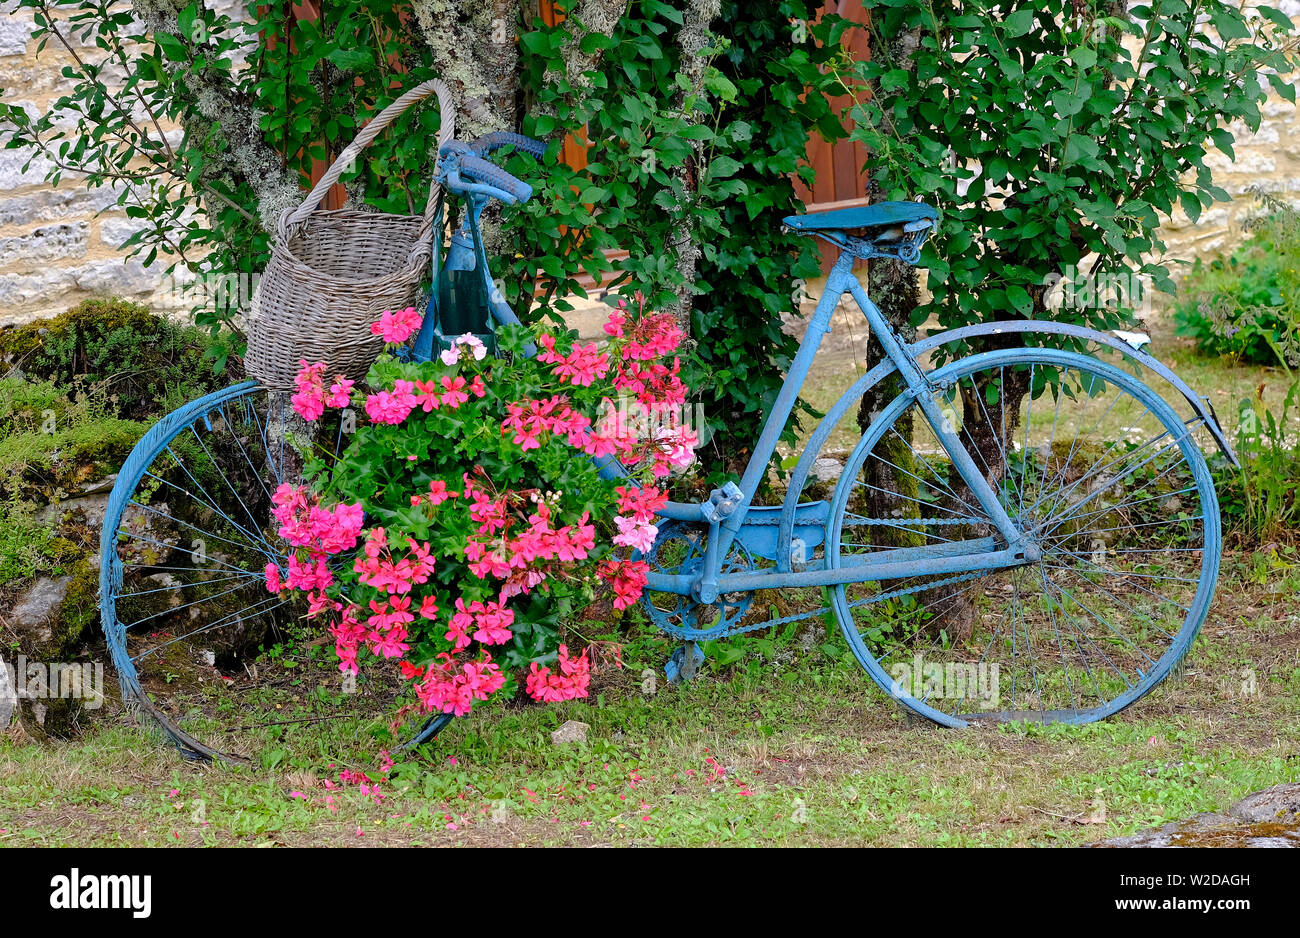 Alte französische Fahrrad blau lackiert mit hängenden rosa Blumen, Lot, Frankreich Stockfoto